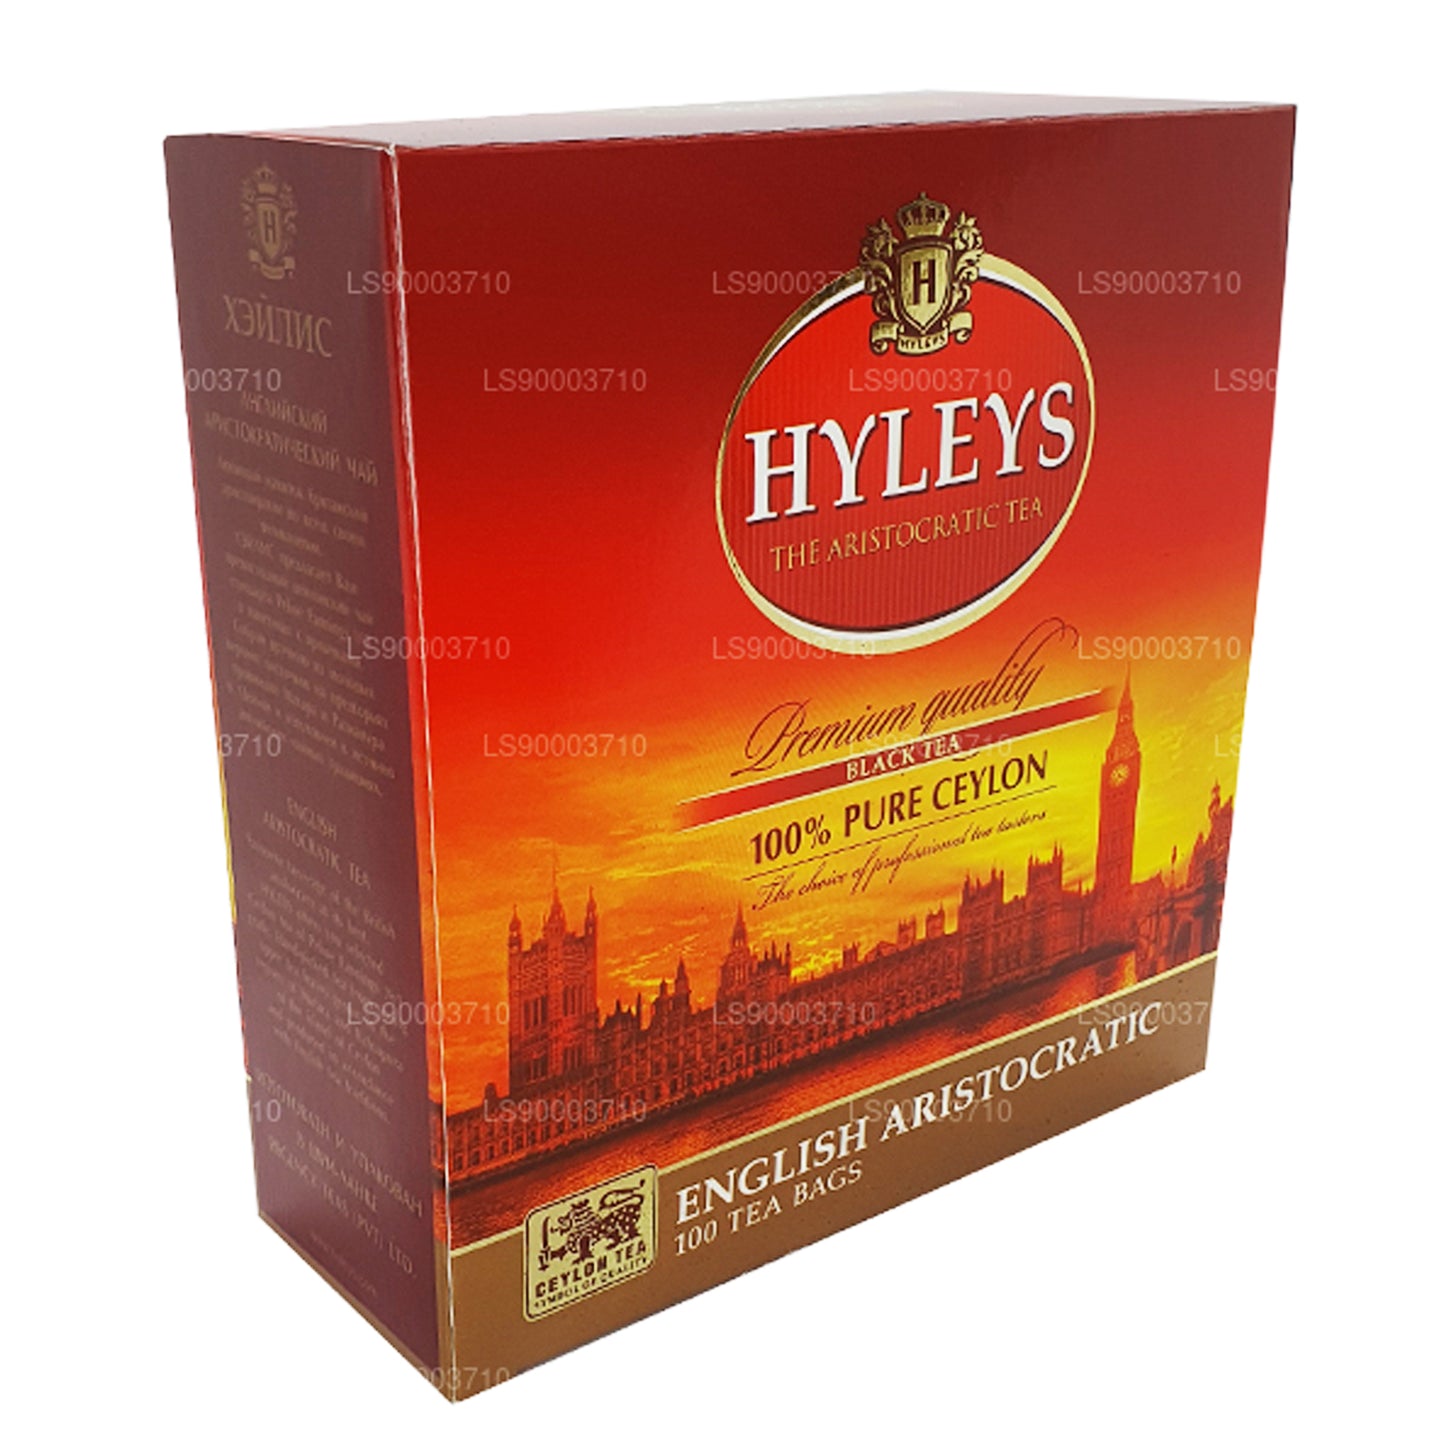 HLEYS Premium Kalite Siyah Çay 100 Çay Bages (200g)